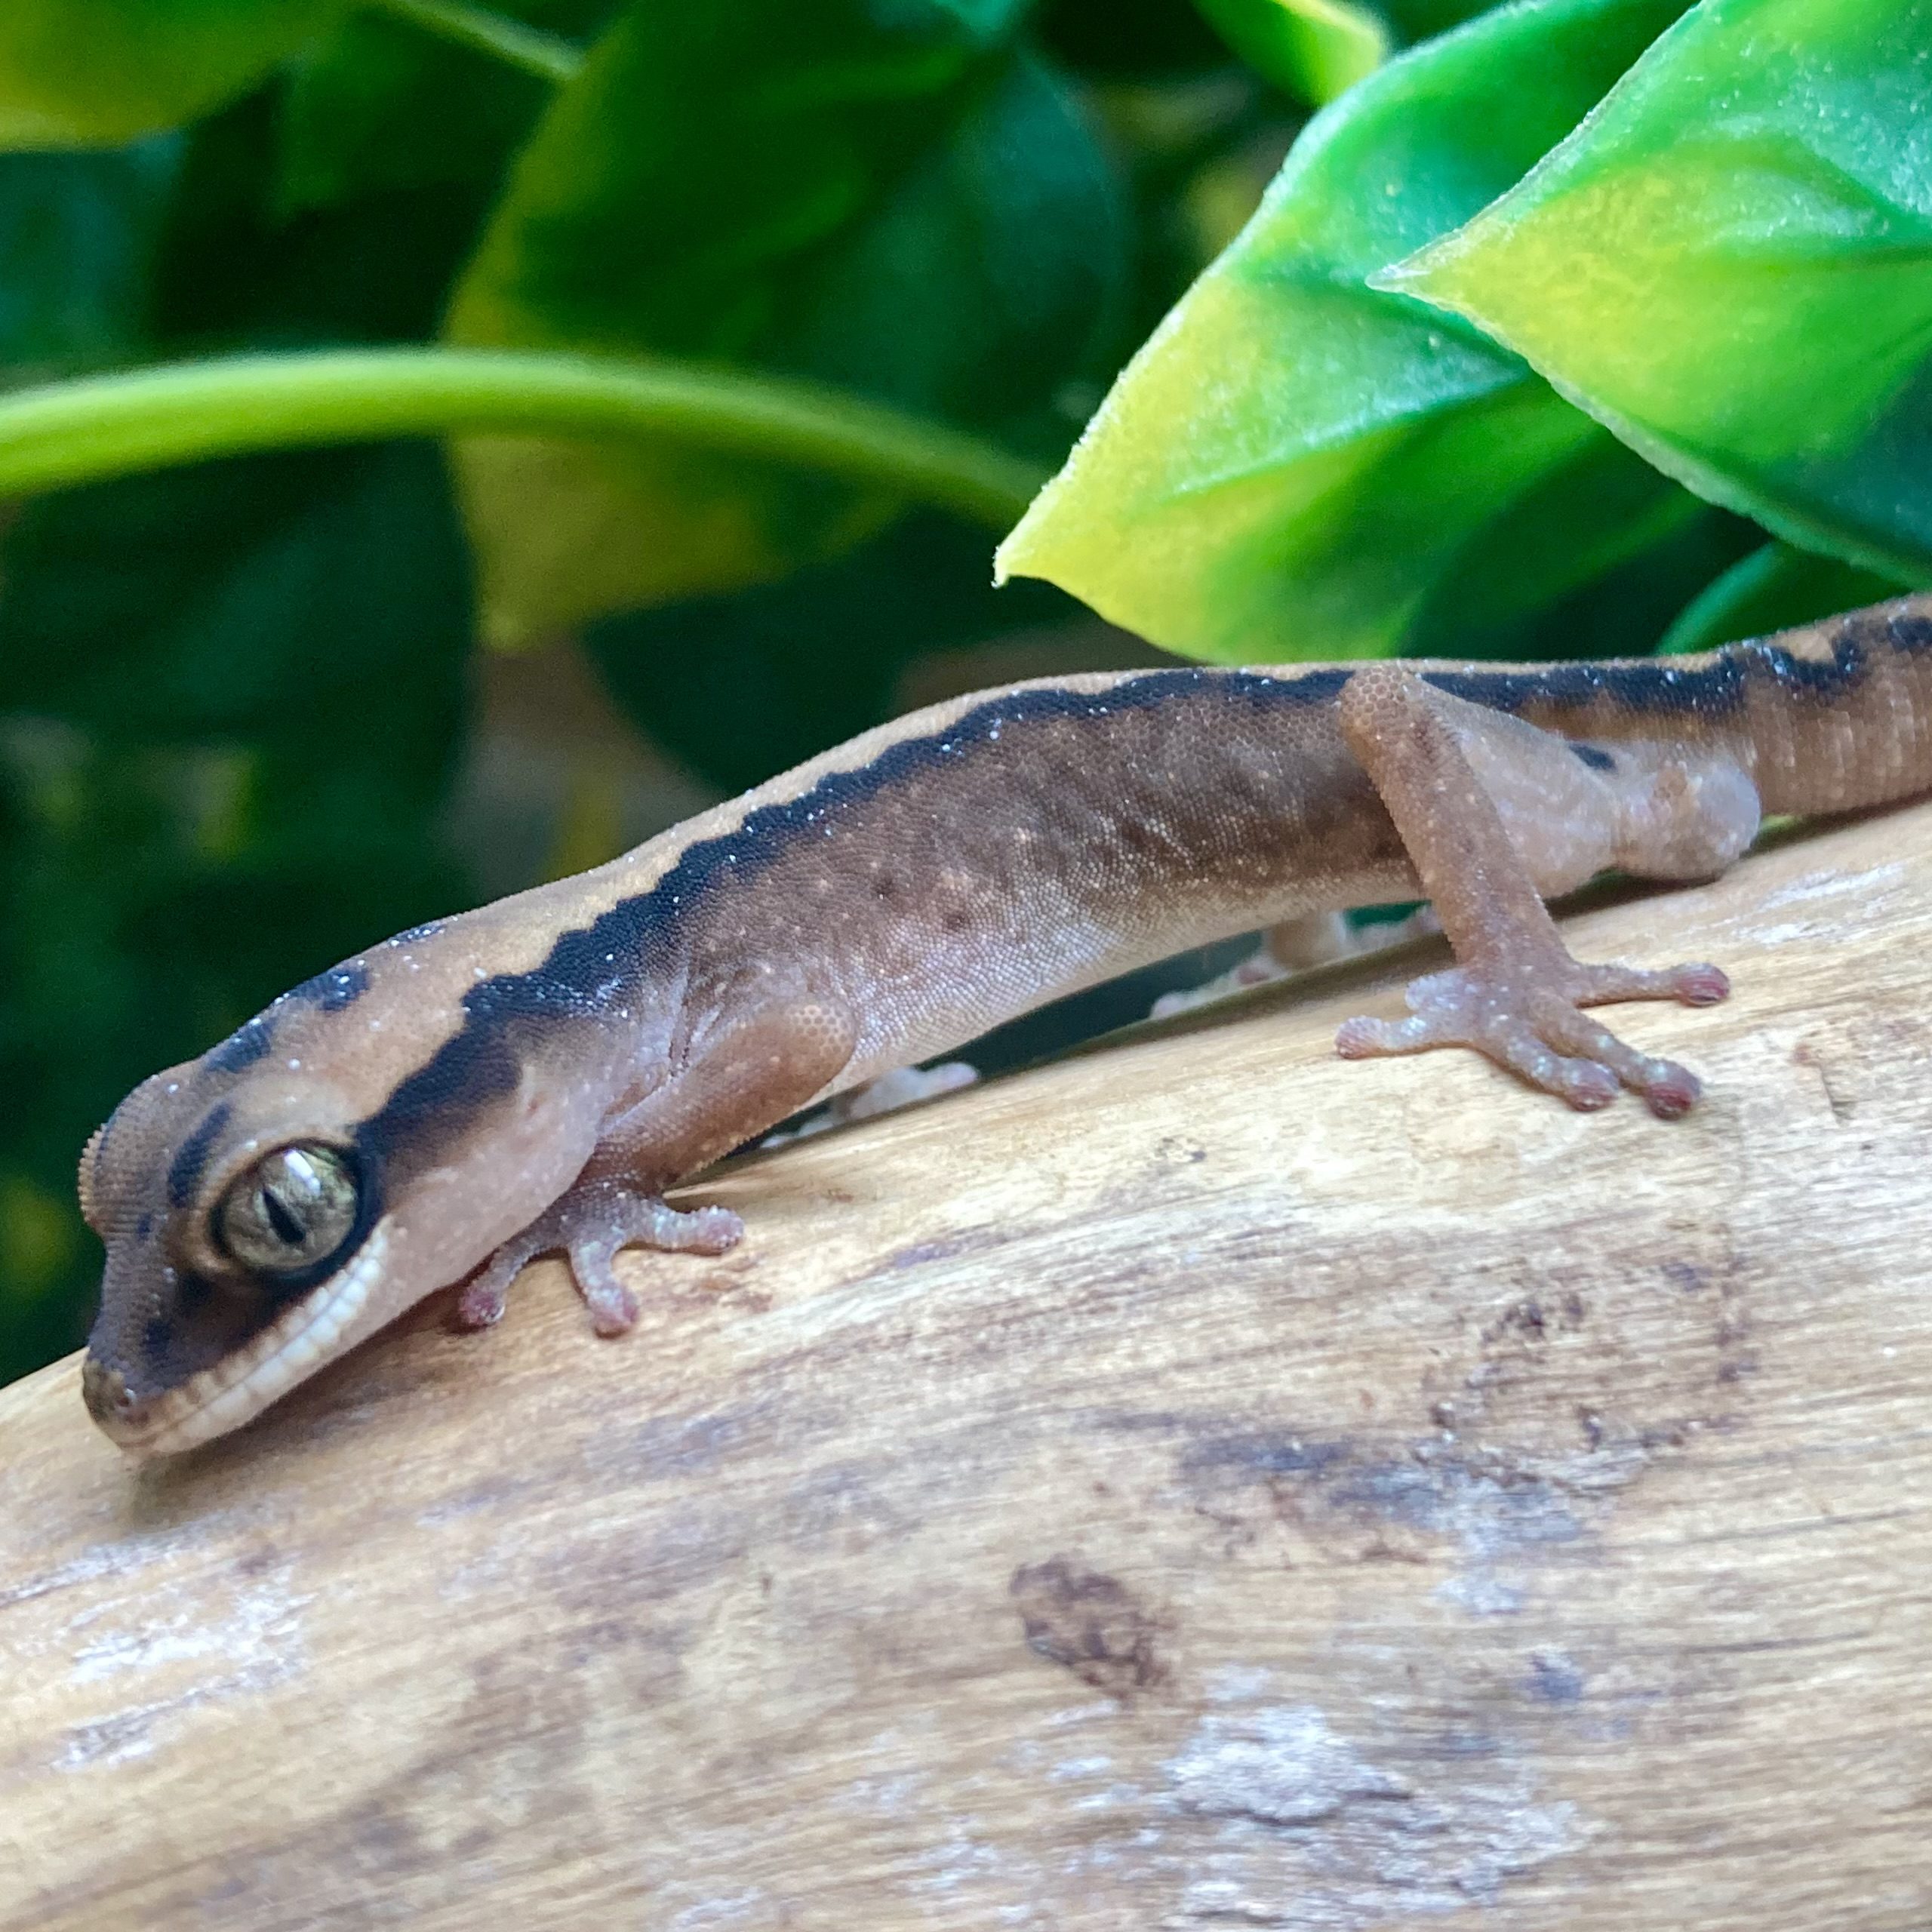 CB Australian Giant Stone Gecko